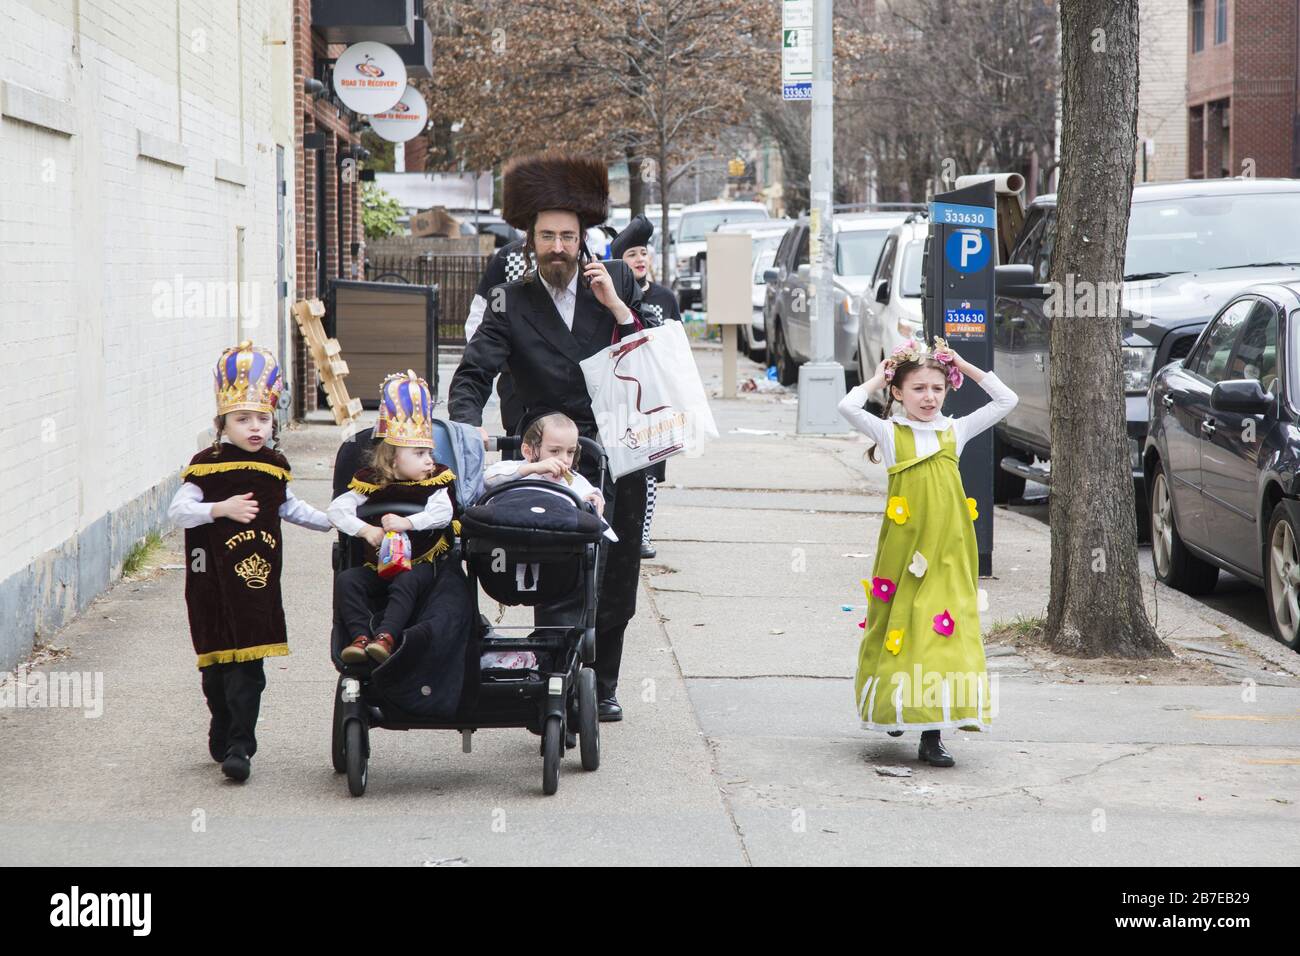 Die orthodoxe jüdische Gemeinde im Borough Park Brooklyn feiert den festlichen Urlaub von Purim, indem sie Kostüme trägt, Armen spendet, leckere Speisen isst und im Allgemeinen eine gute Zeit hat. Die Leute auf der 13th Avenue. Purim wird jedes Jahr am 14. Des hebräischen Monats Adar gefeiert. Es erinnert an die Errettung des jüdischen Volkes im alten Perserreich aus Hamans Handlung "alle Juden, jung und alt, Säuglinge und Frauen, an einem einzigen Tag zu vernichten, zu töten und zu vernichten", wie in der Megillah (Buch Esther) festgehalten. Stockfoto